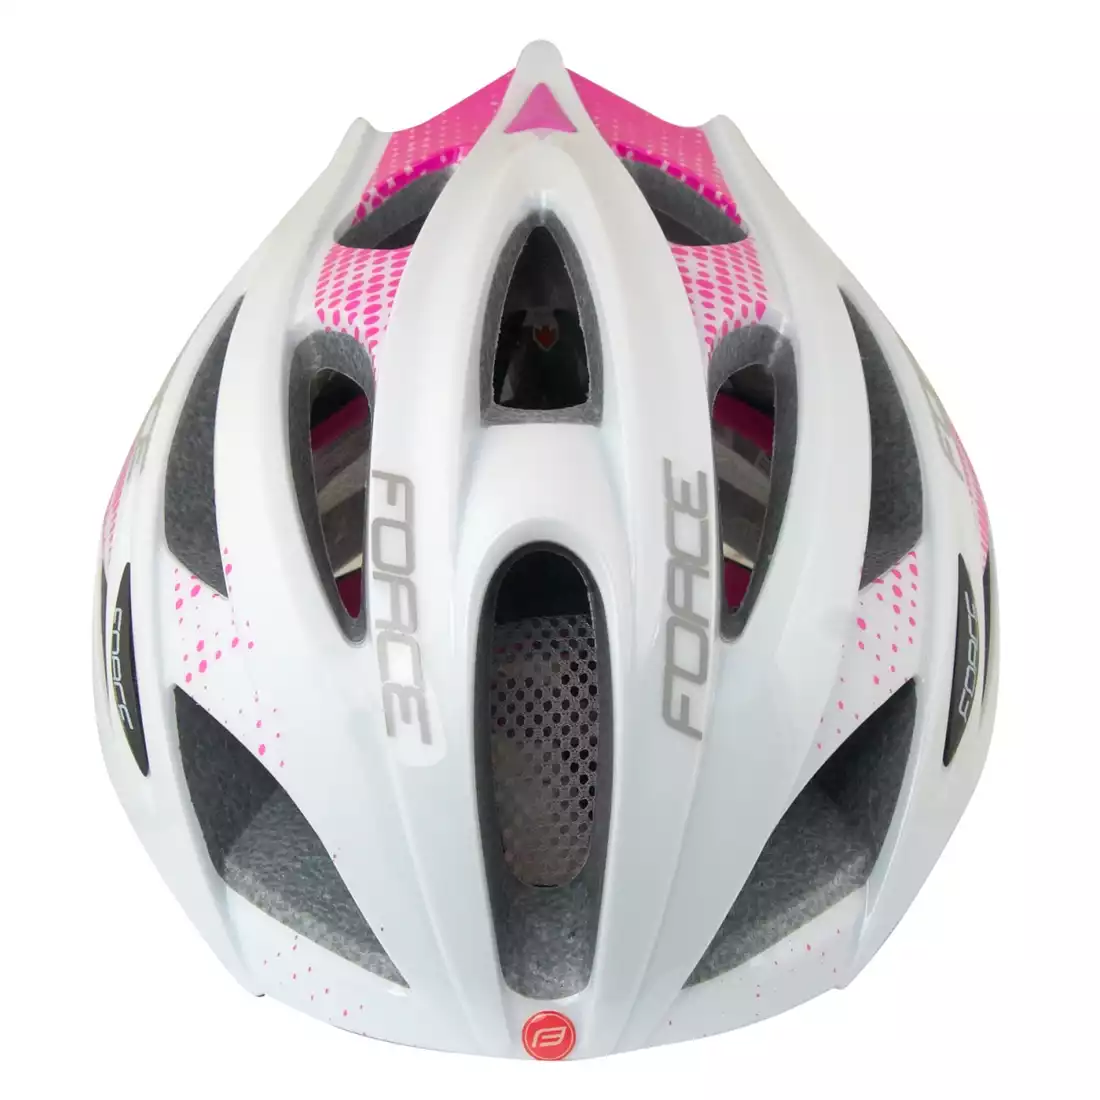 FORCE COBRA damski kask rowerowy 902930 biało-różowy 